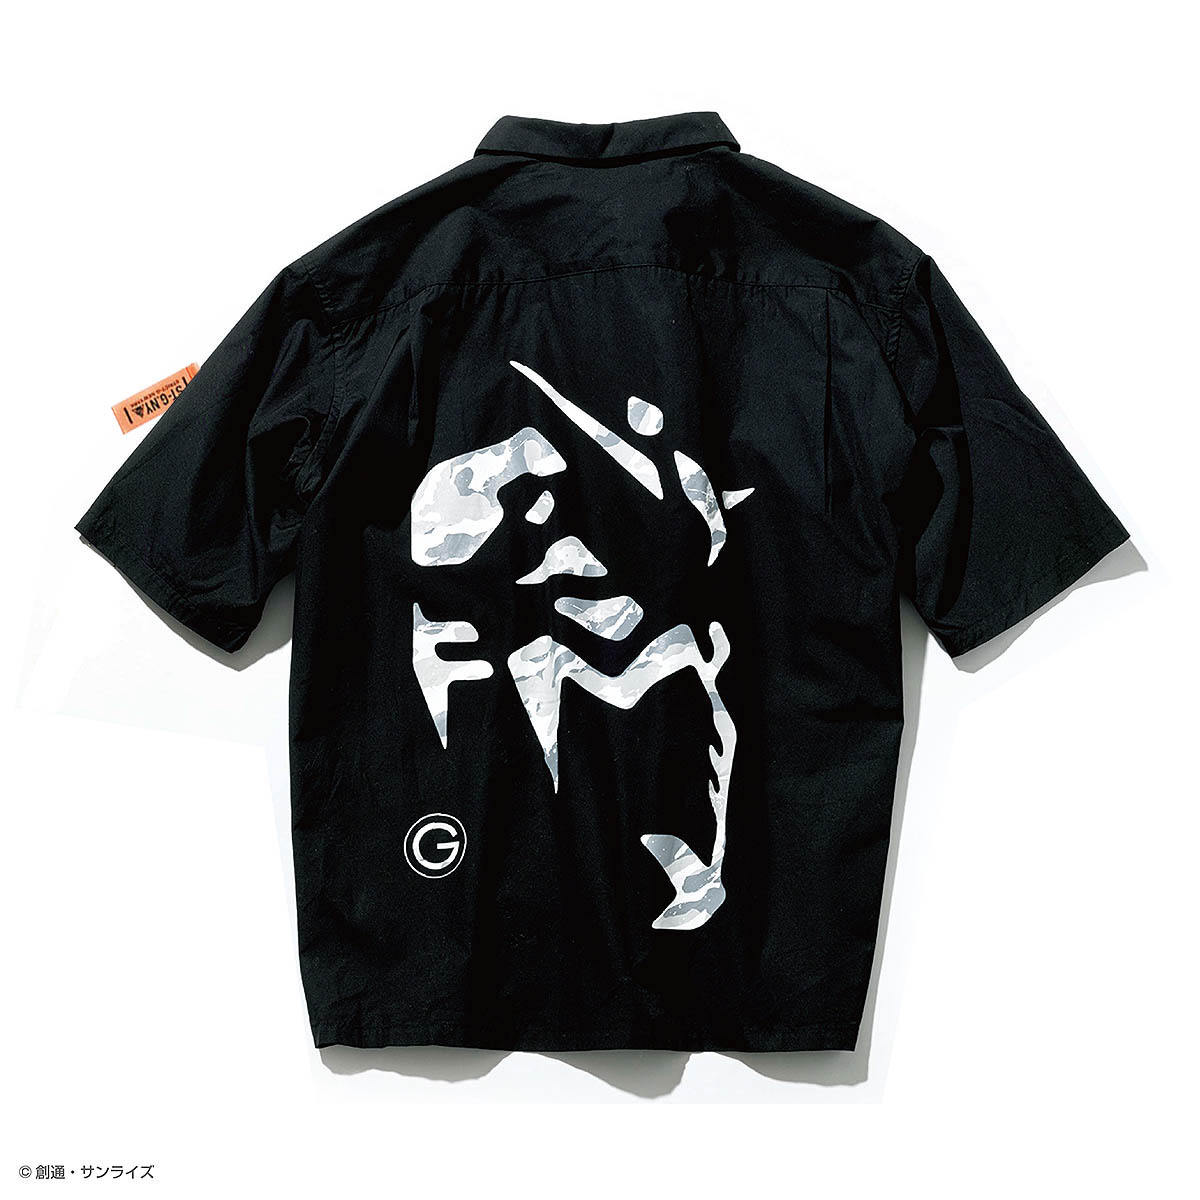 STRICT-G NEW YARK 半袖オープンカラーシャツ ガンダムフェイス柄